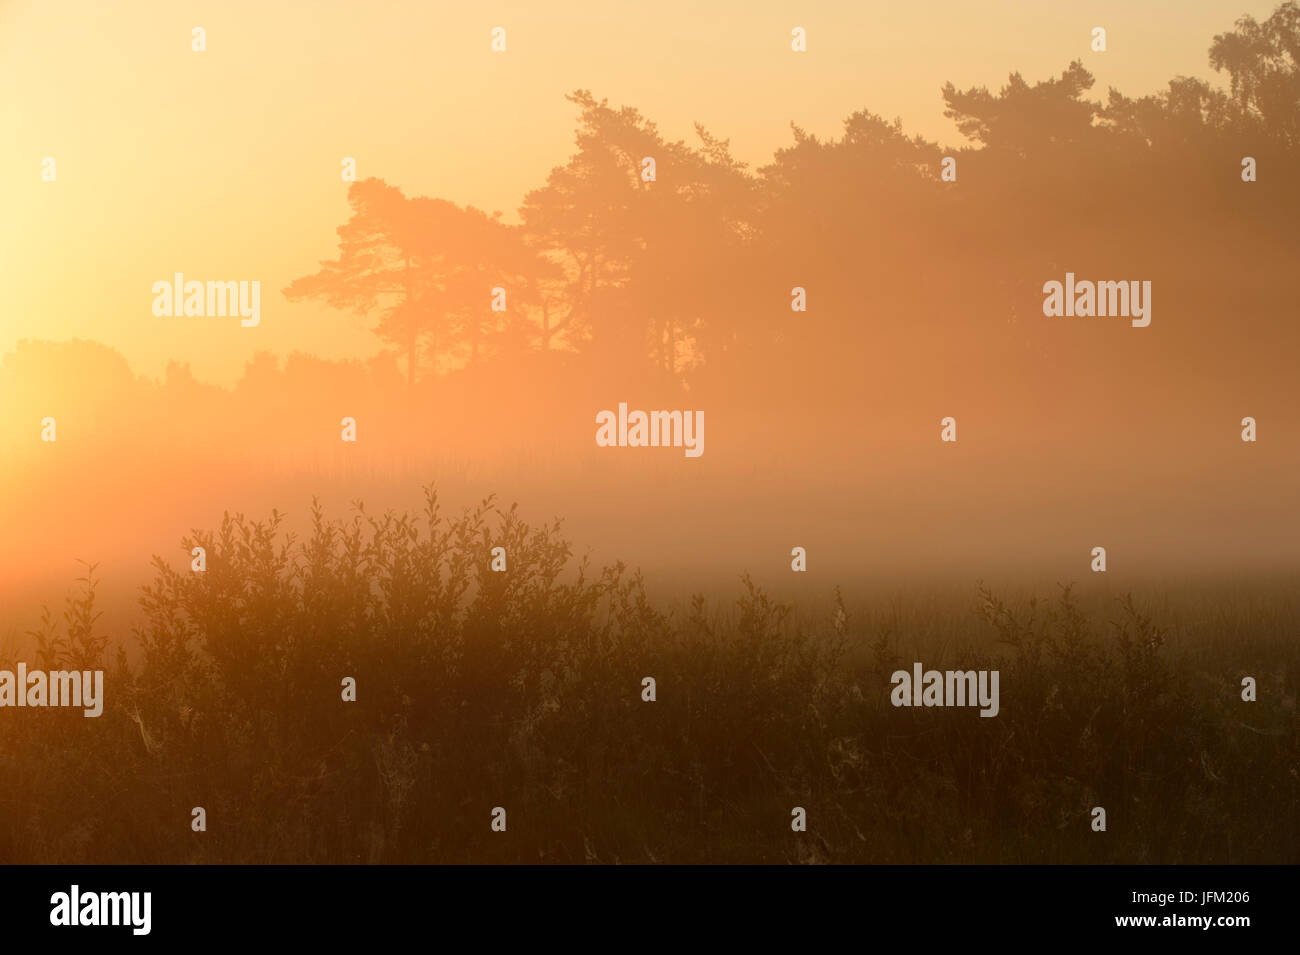 Estate alba con nebbia in un moro con salici e pini. Klein Bylaer, Barneveld, Paesi Bassi, Europa Foto Stock